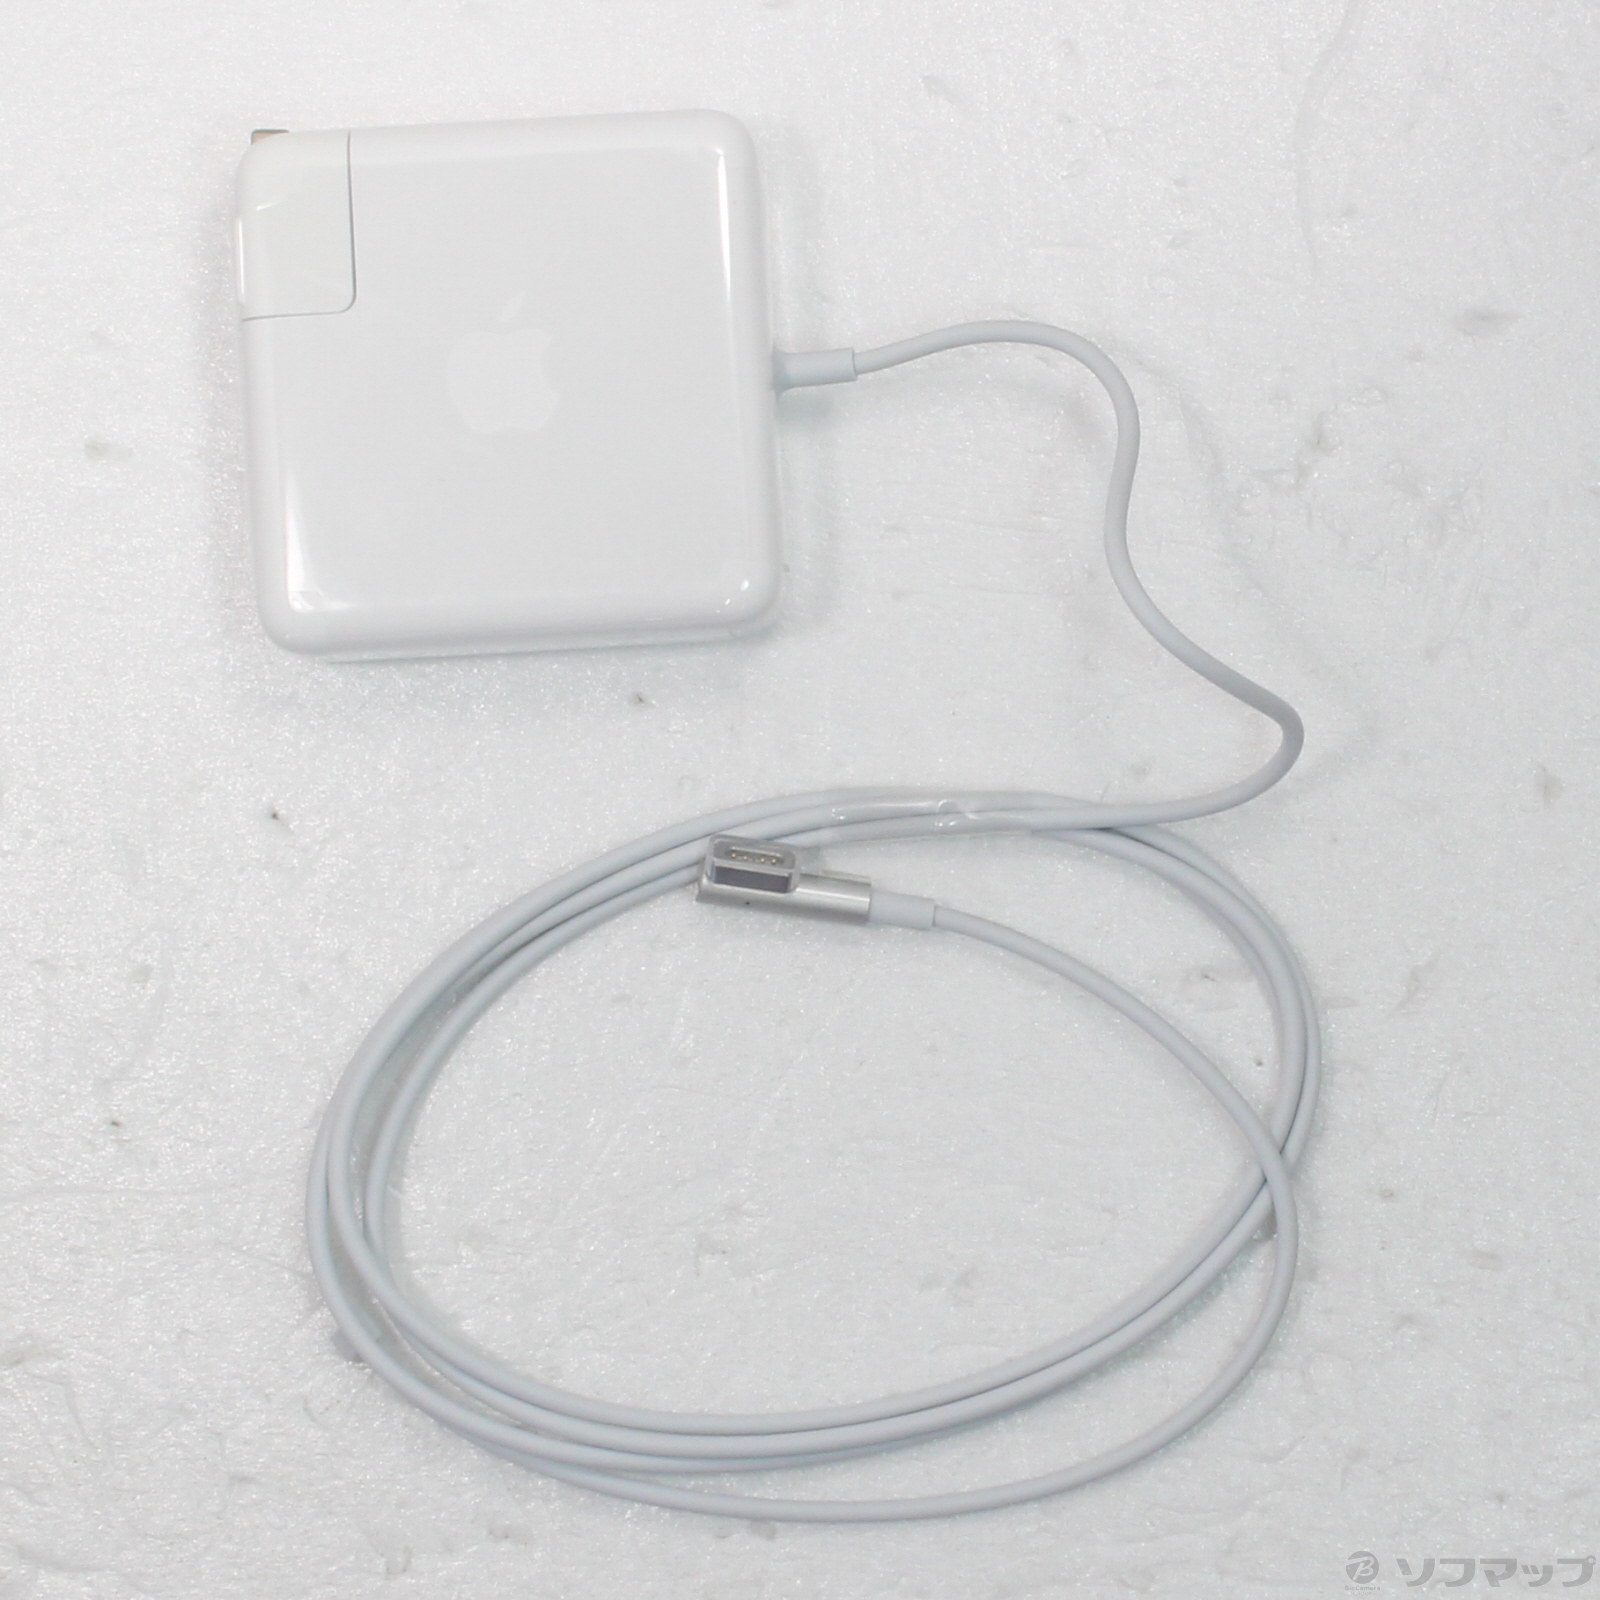 〔展示品〕 Apple 85W MagSafe電源アダプタ MC556J／B